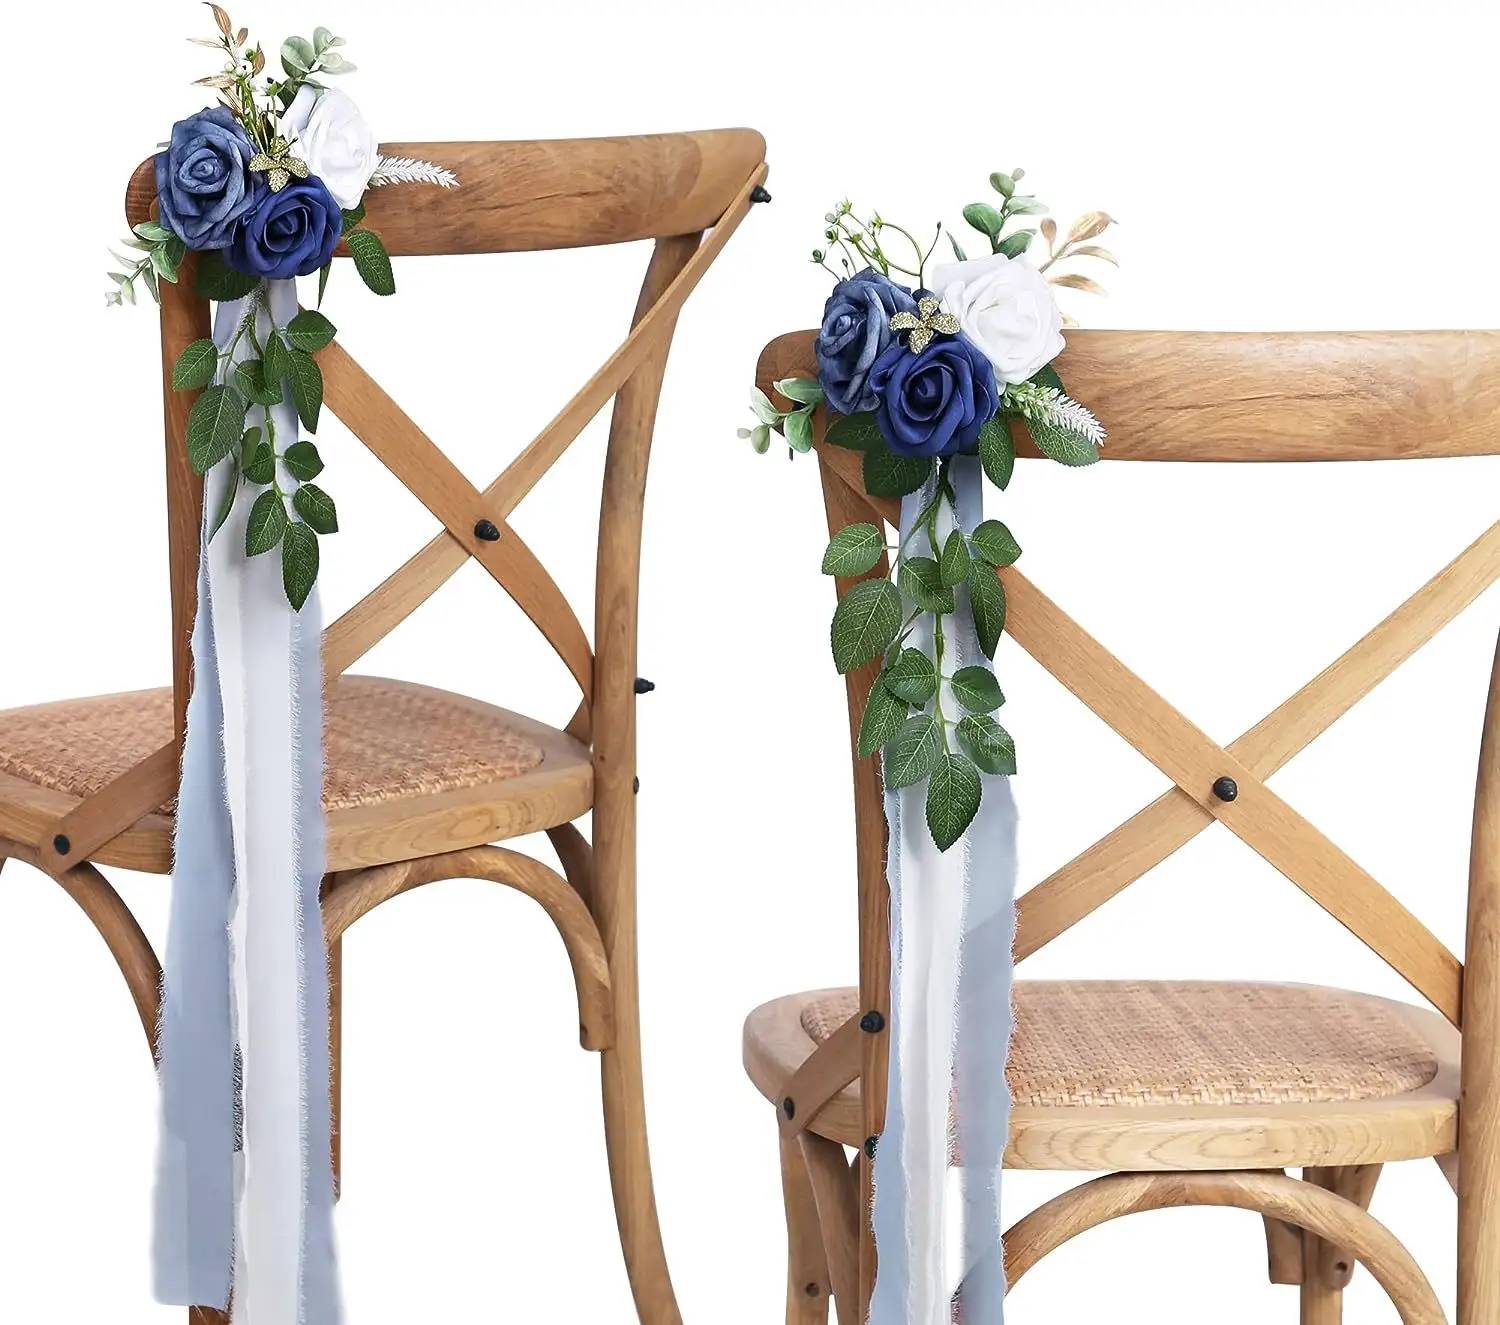 Düğün töreni için düğün koridor süslemeleri çiçekler okaliptüs şerit kilise sandalyesi dekor parti dekor ile yapay çiçekler